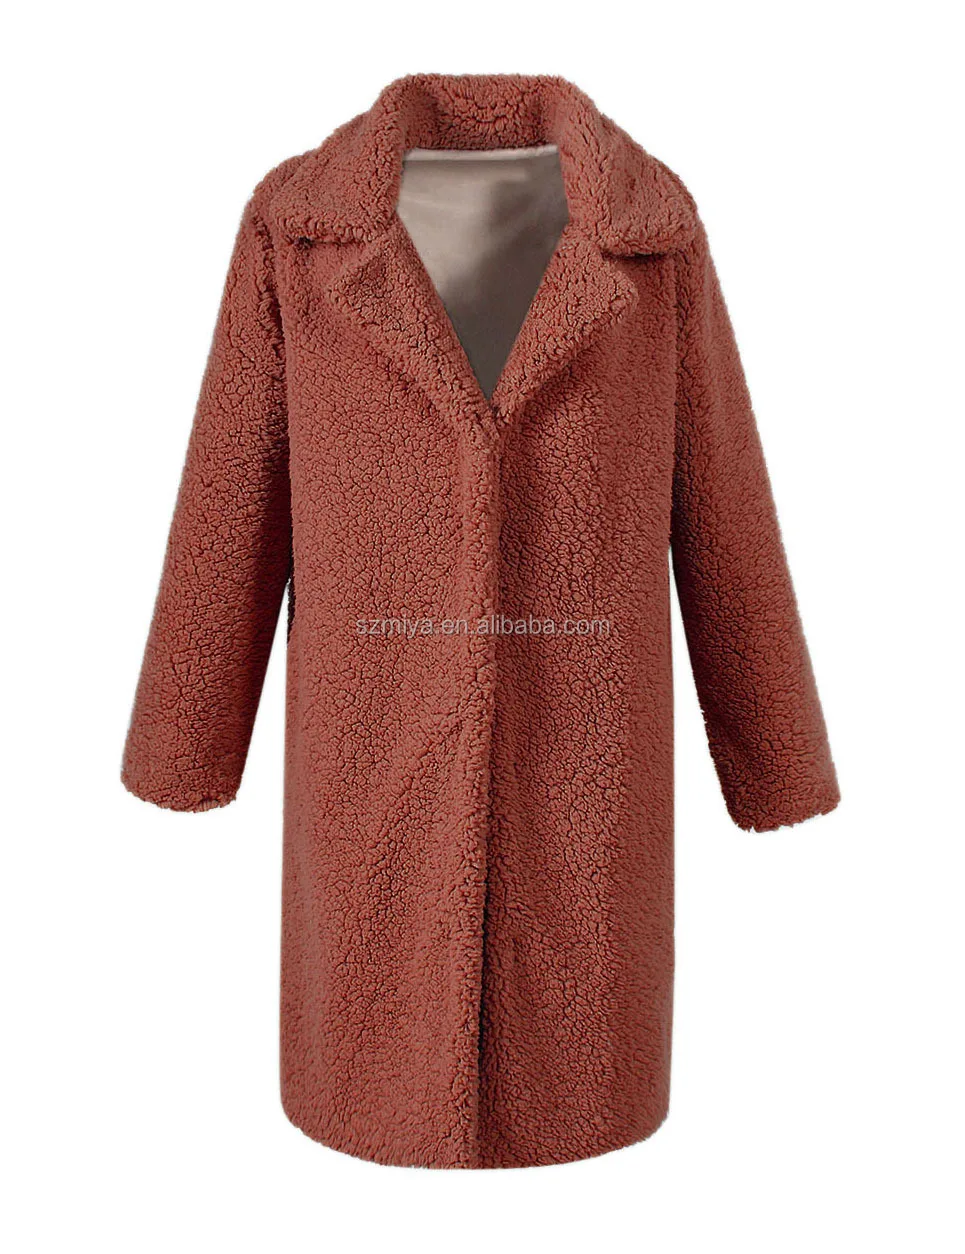 Hot Selling Fur Coats & Faux Fur Coats For Women Fashion Long Faux Fur